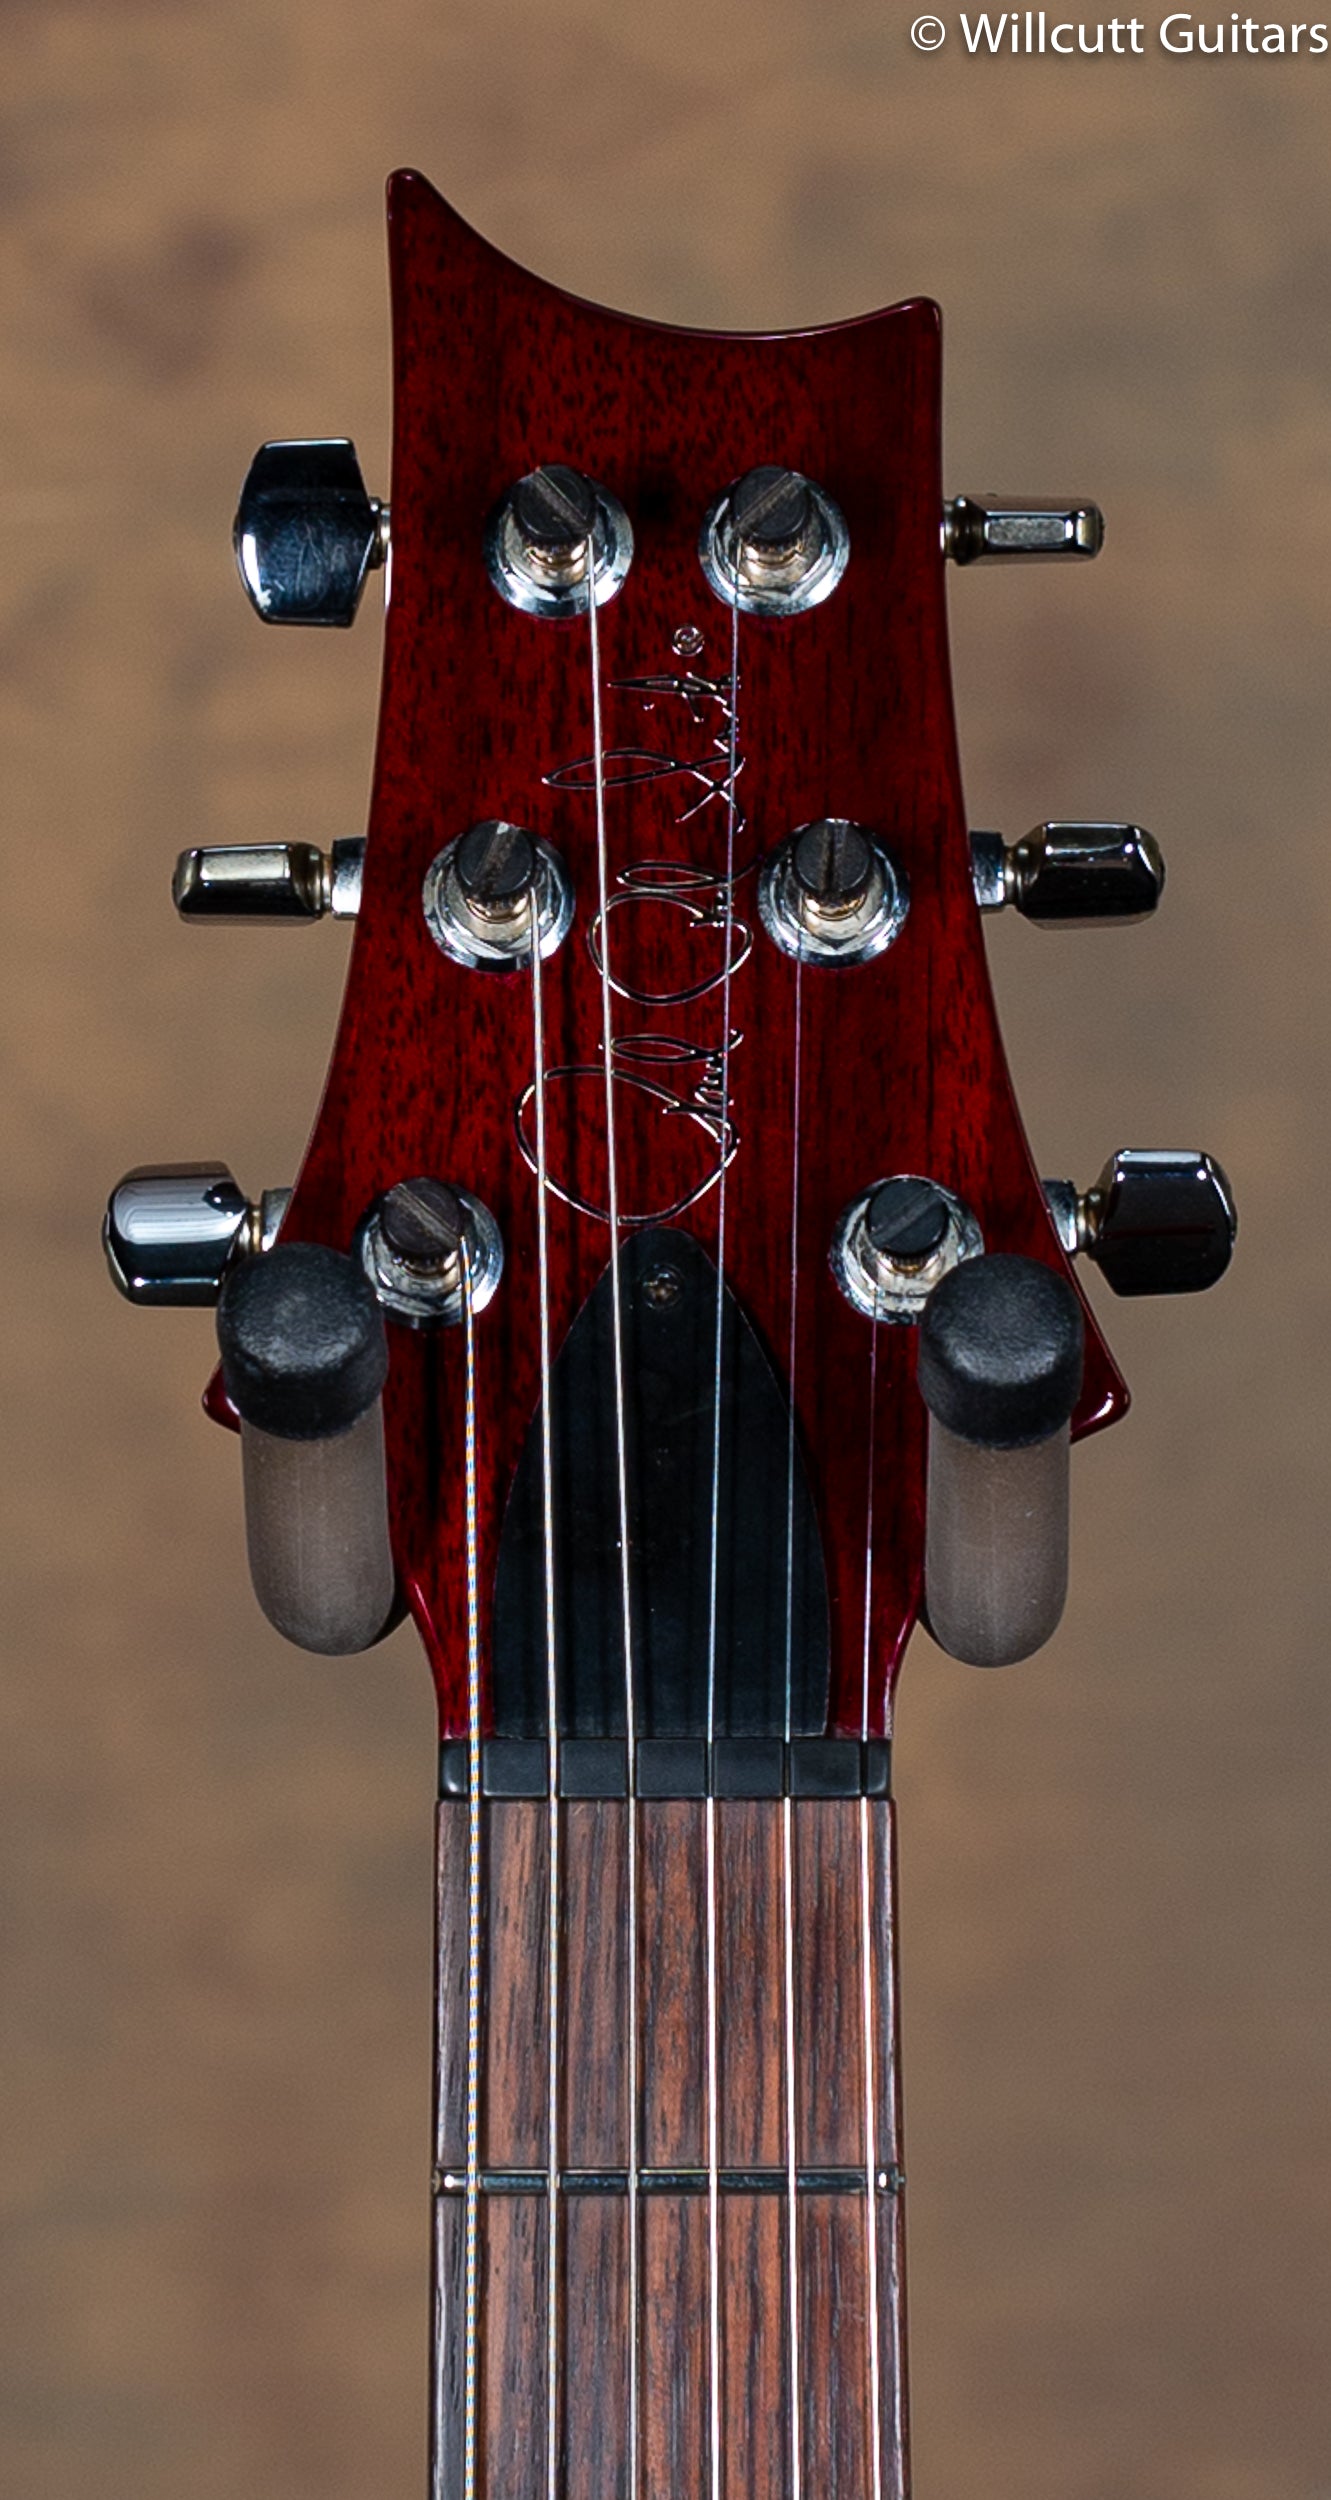 2009 PRS Custom 24 10 Top Dark Cherry Burst - Willcutt Guitars